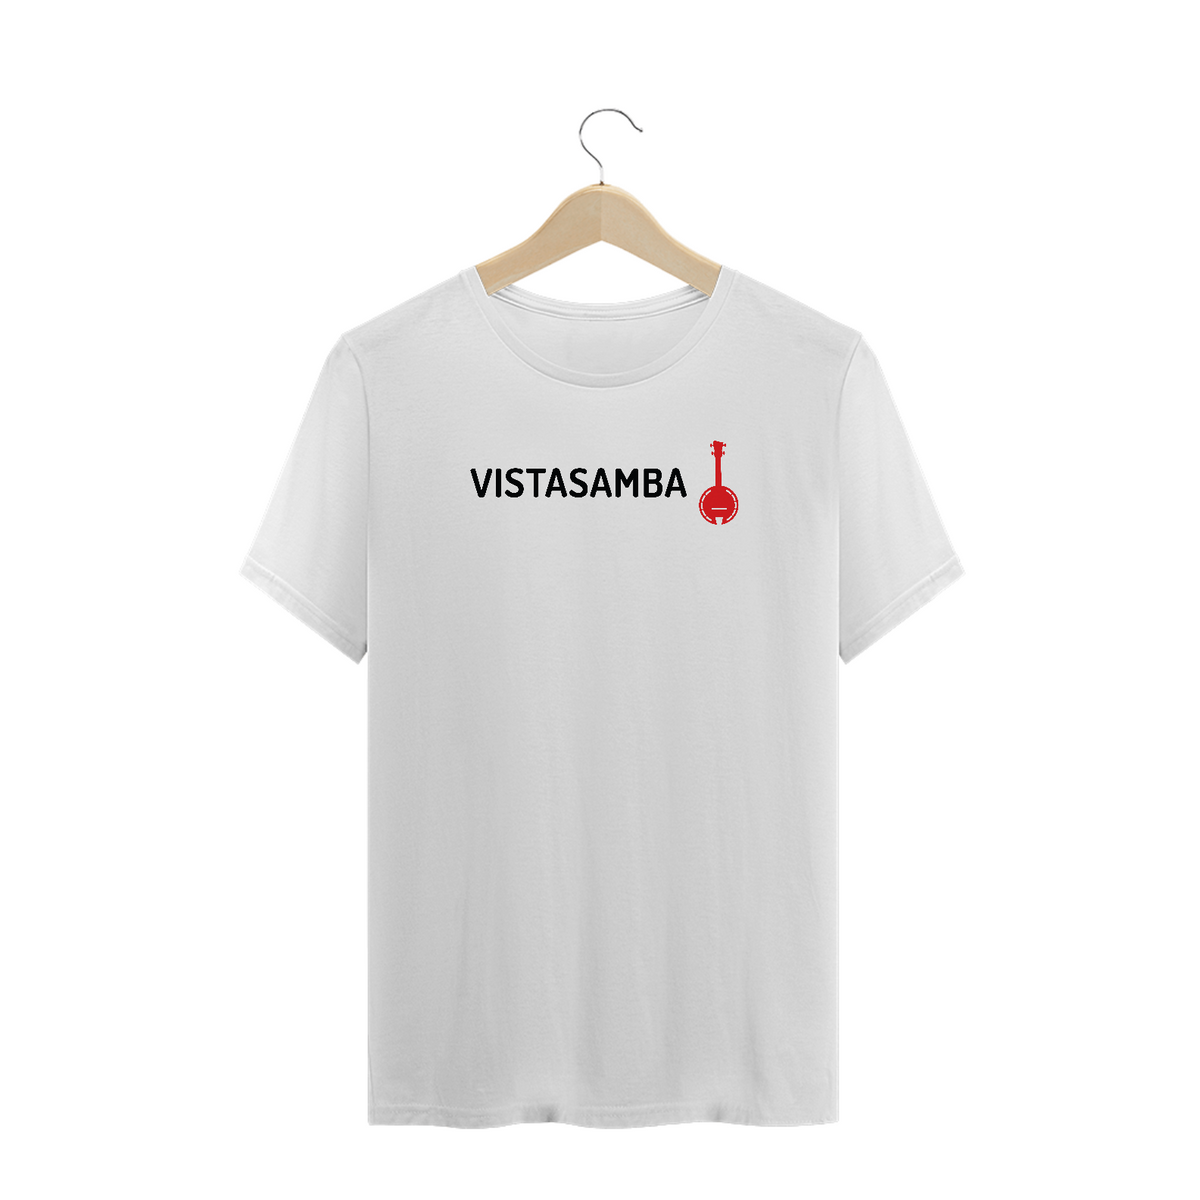 Nome do produto: Camiseta Plus Size Vista Samba - Branca